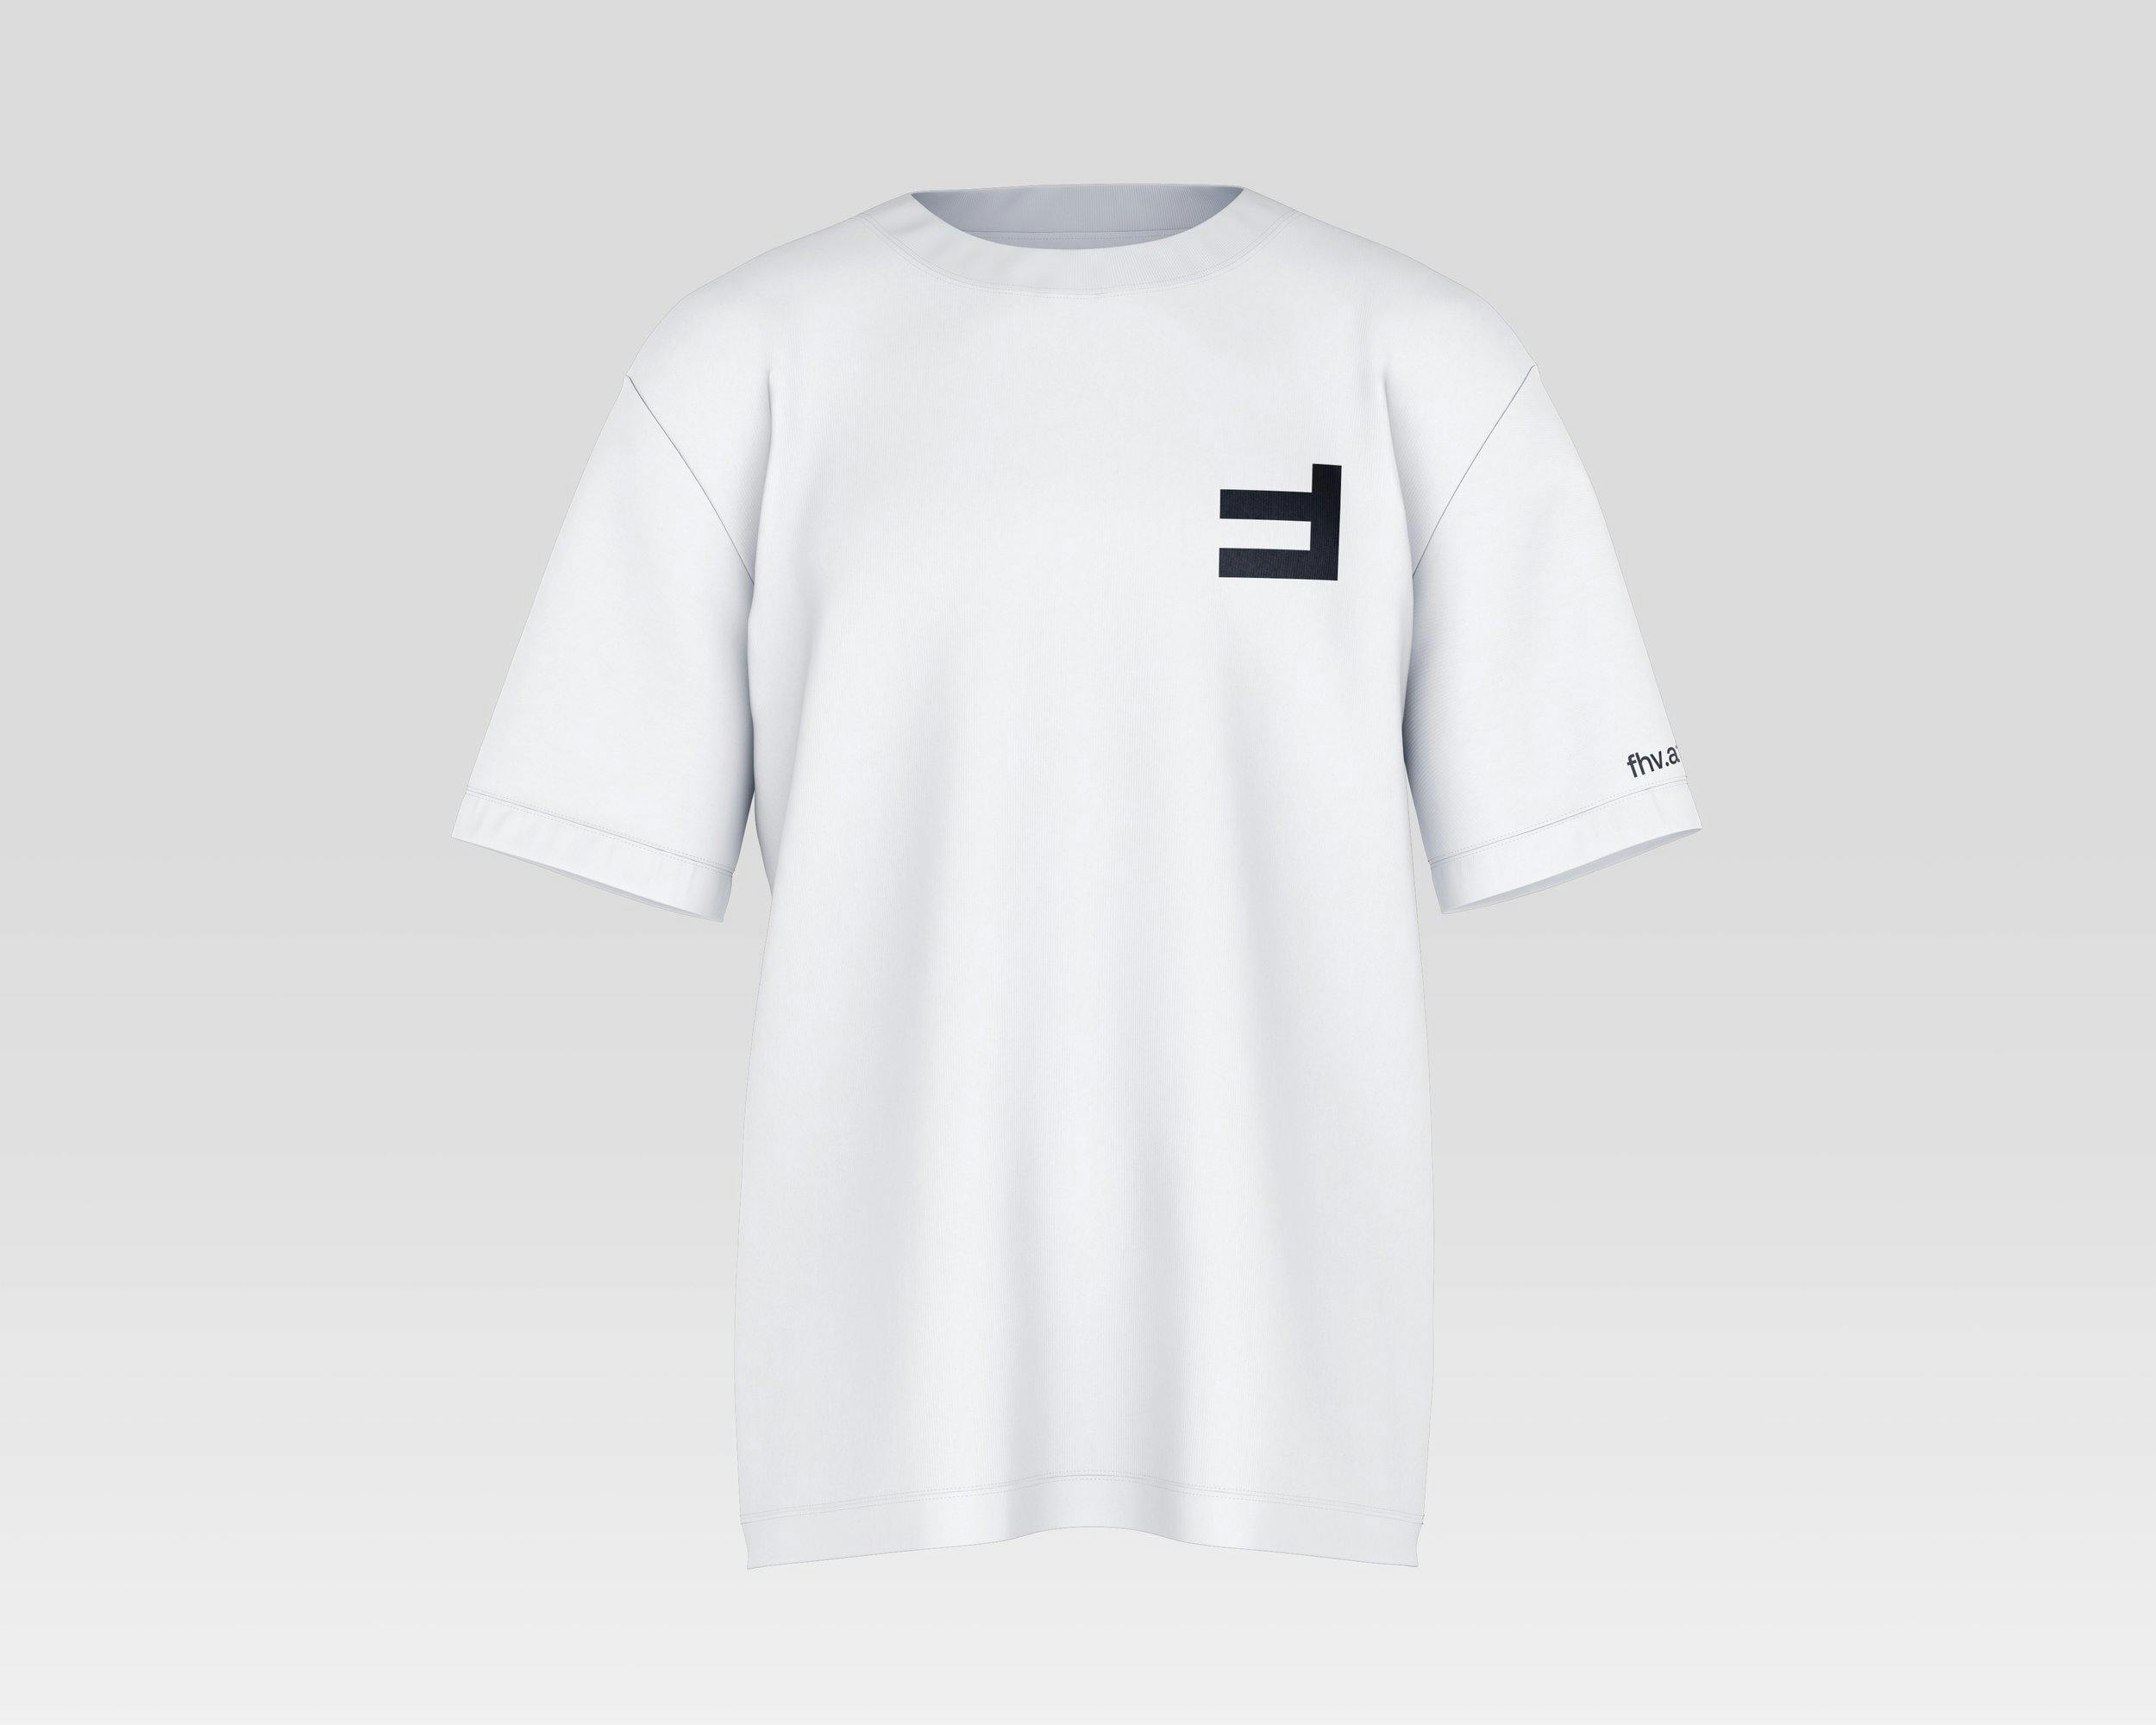 FHV Branding 2021: Staff T-Shirt © Zeughaus Design